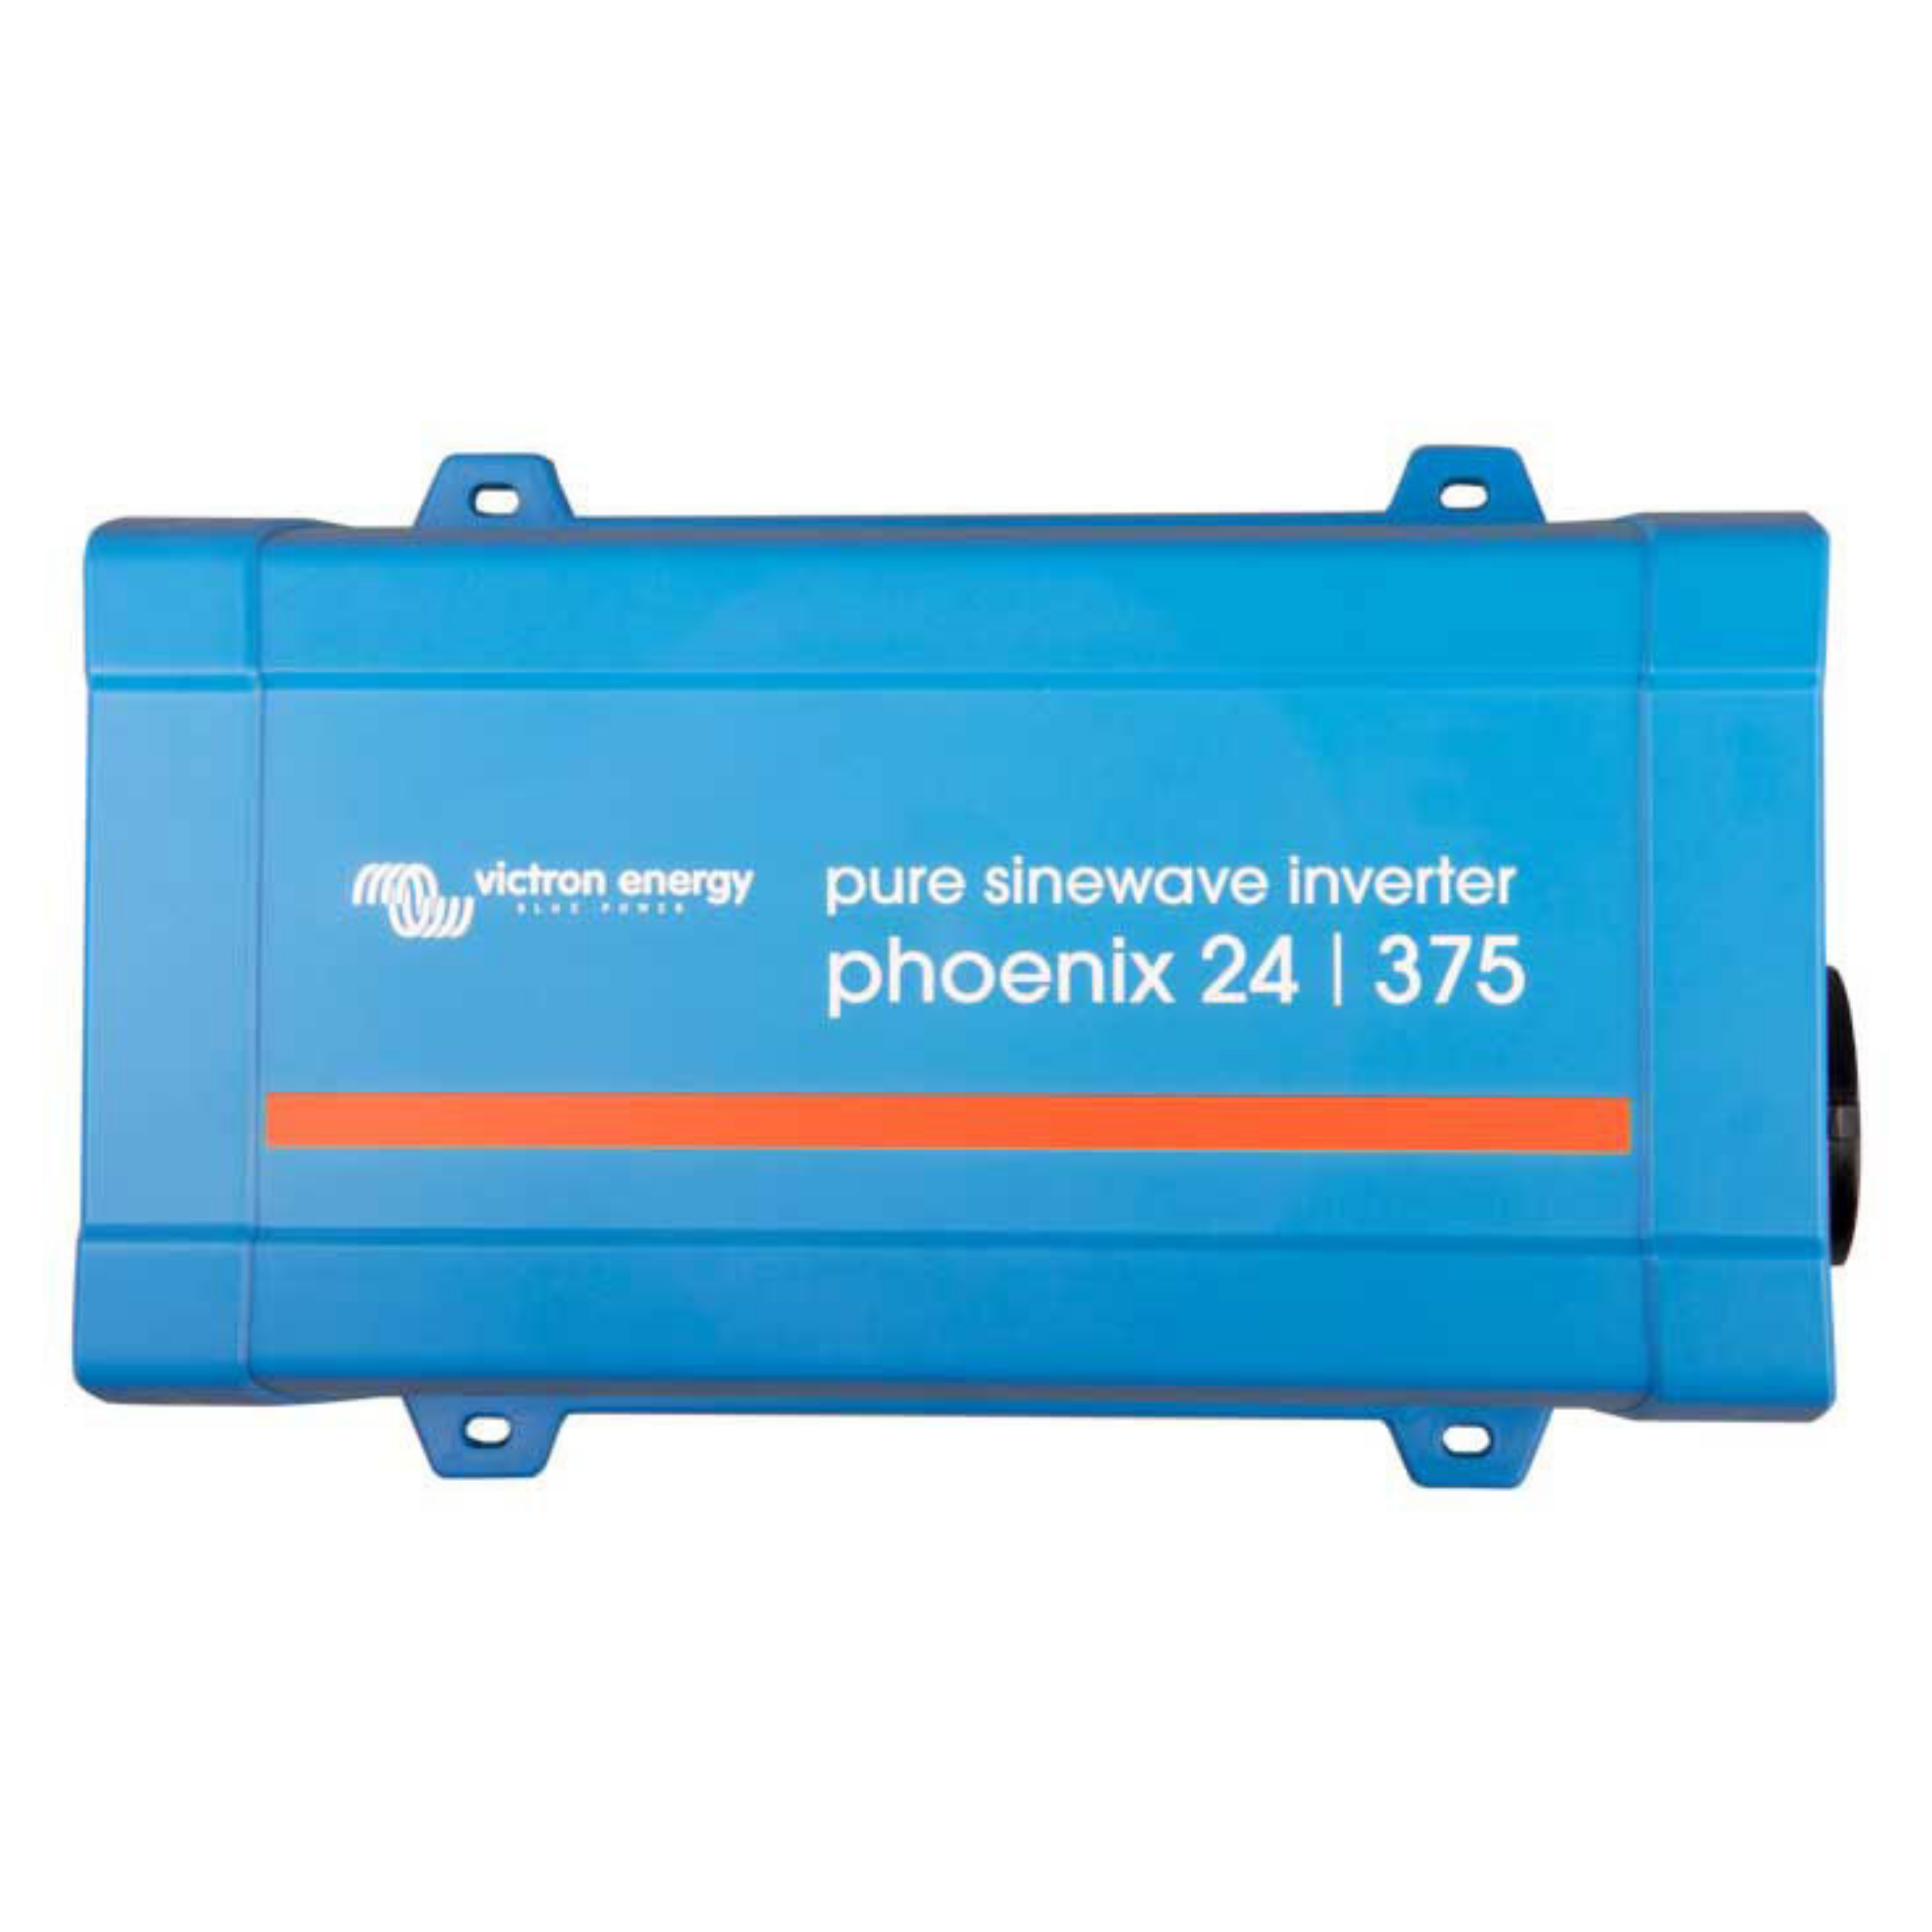 Victron Phoenix Inverter VE.Direct 24/375 (PIN243750400) – Nomadic Leisure